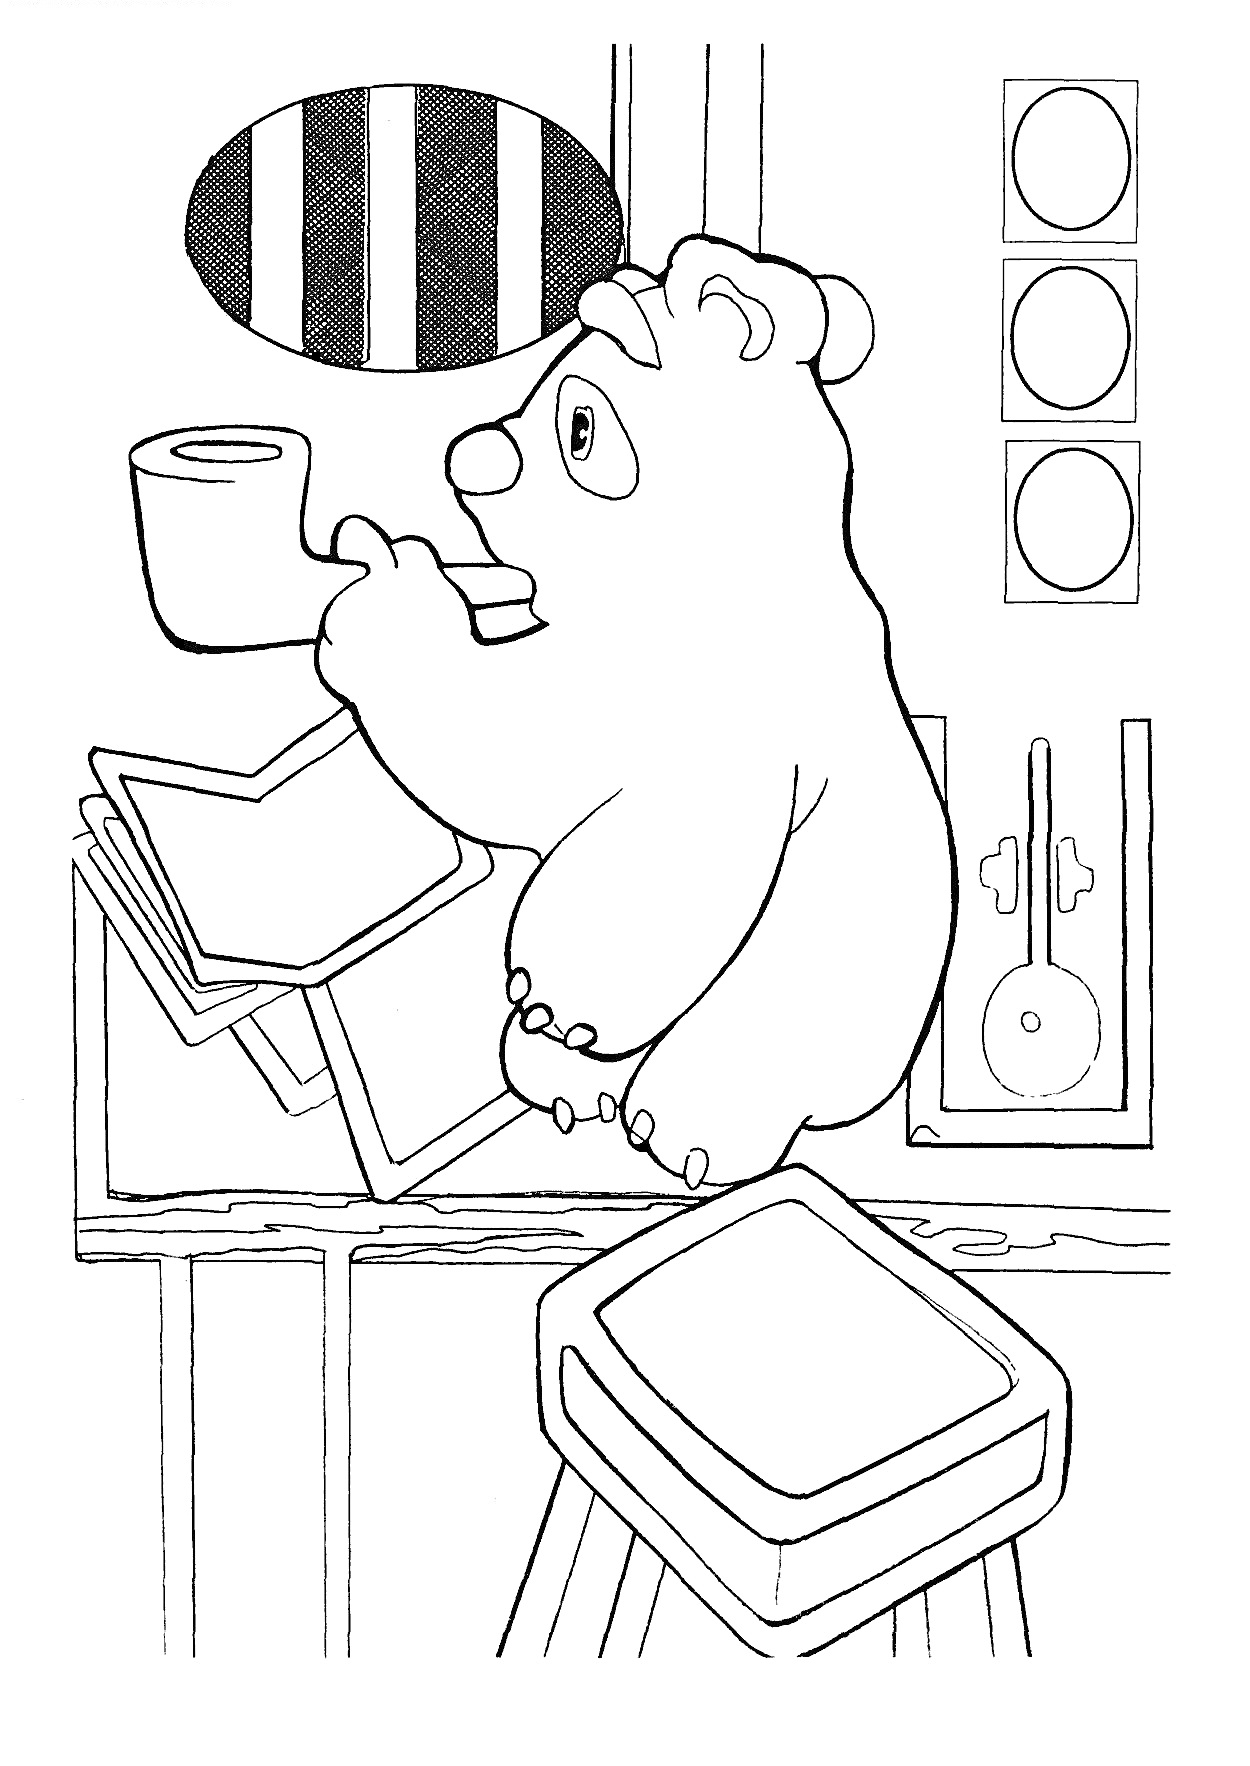 Раскраска Умка в лаборатории, сидящий на стуле, читает большую книгу, полки с книгами и пробирками, окно с полосатыми занавесками.